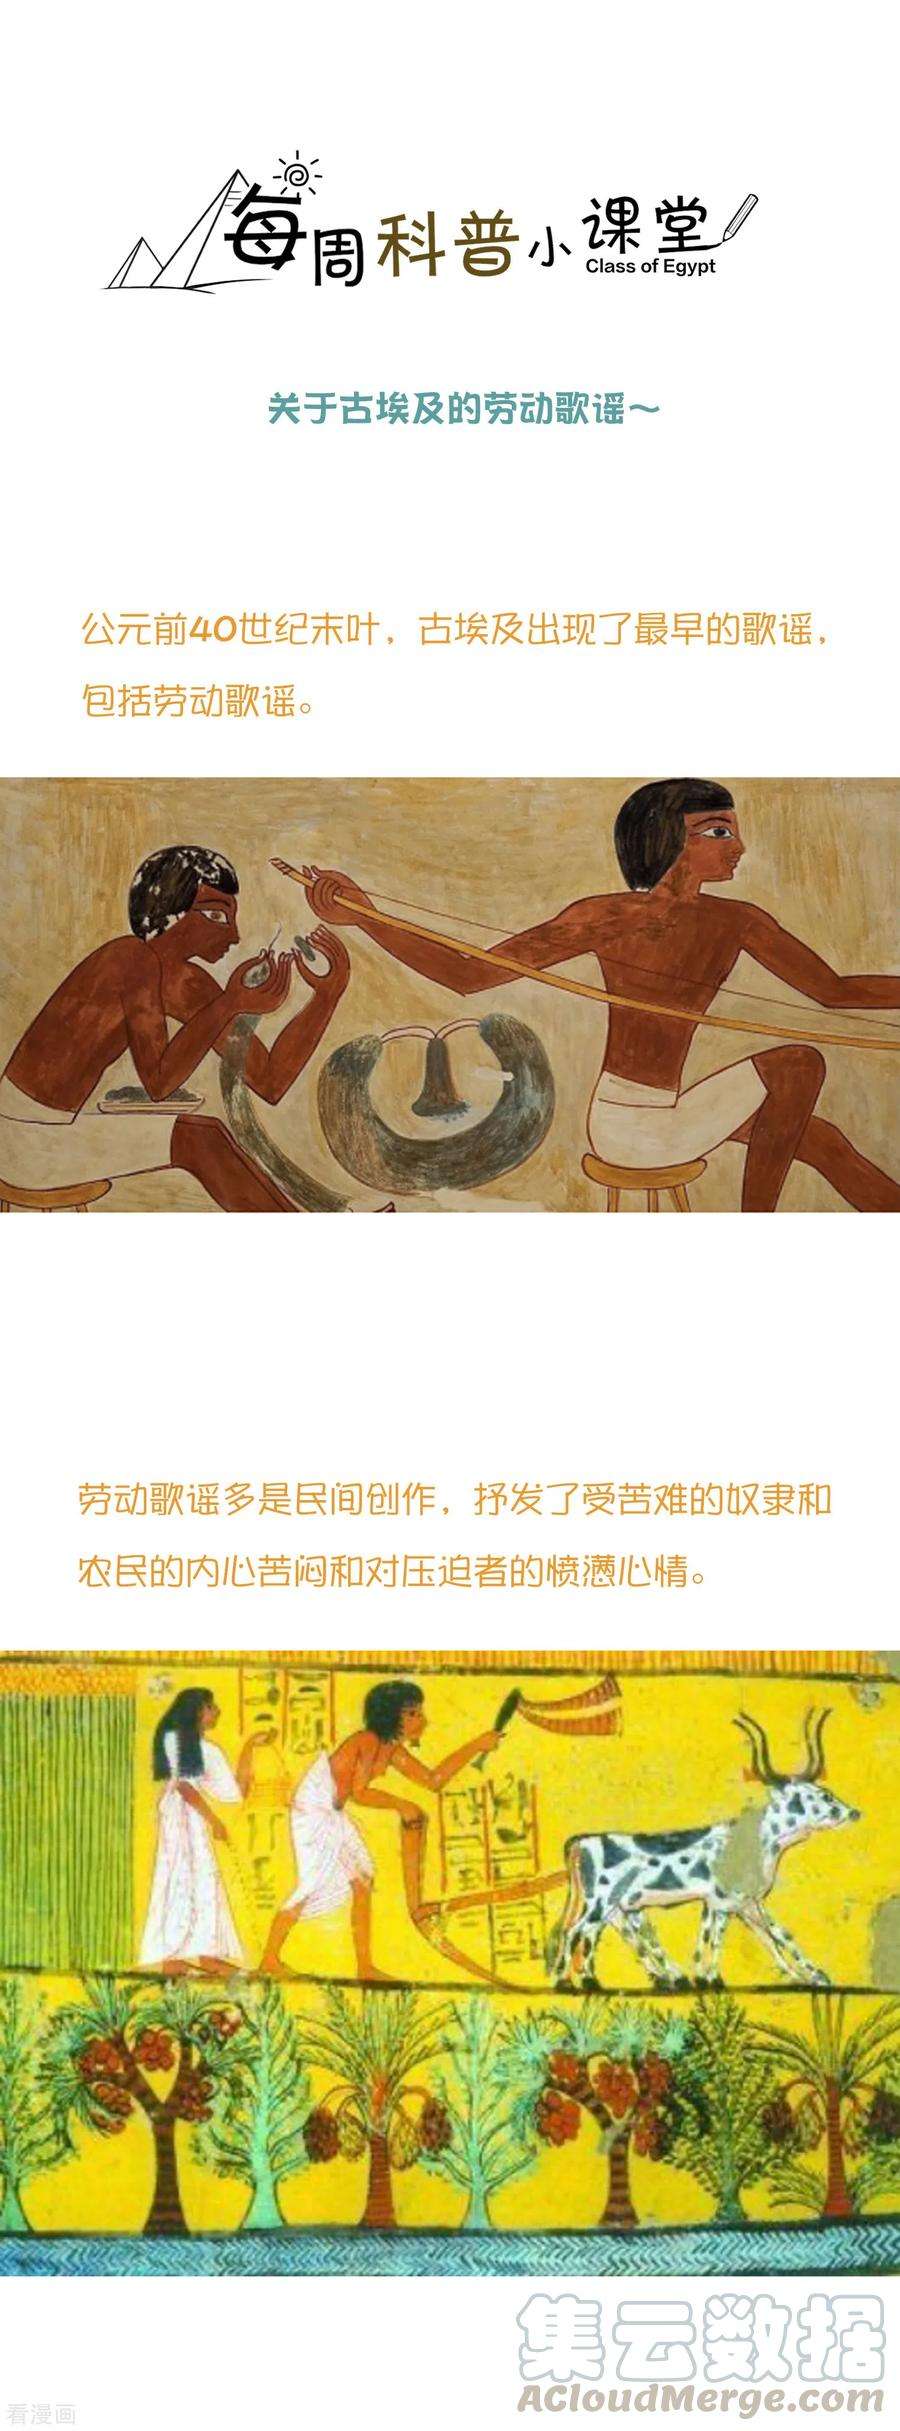 王的第一宠后王的茶话会38 古埃及的人民爱劳动